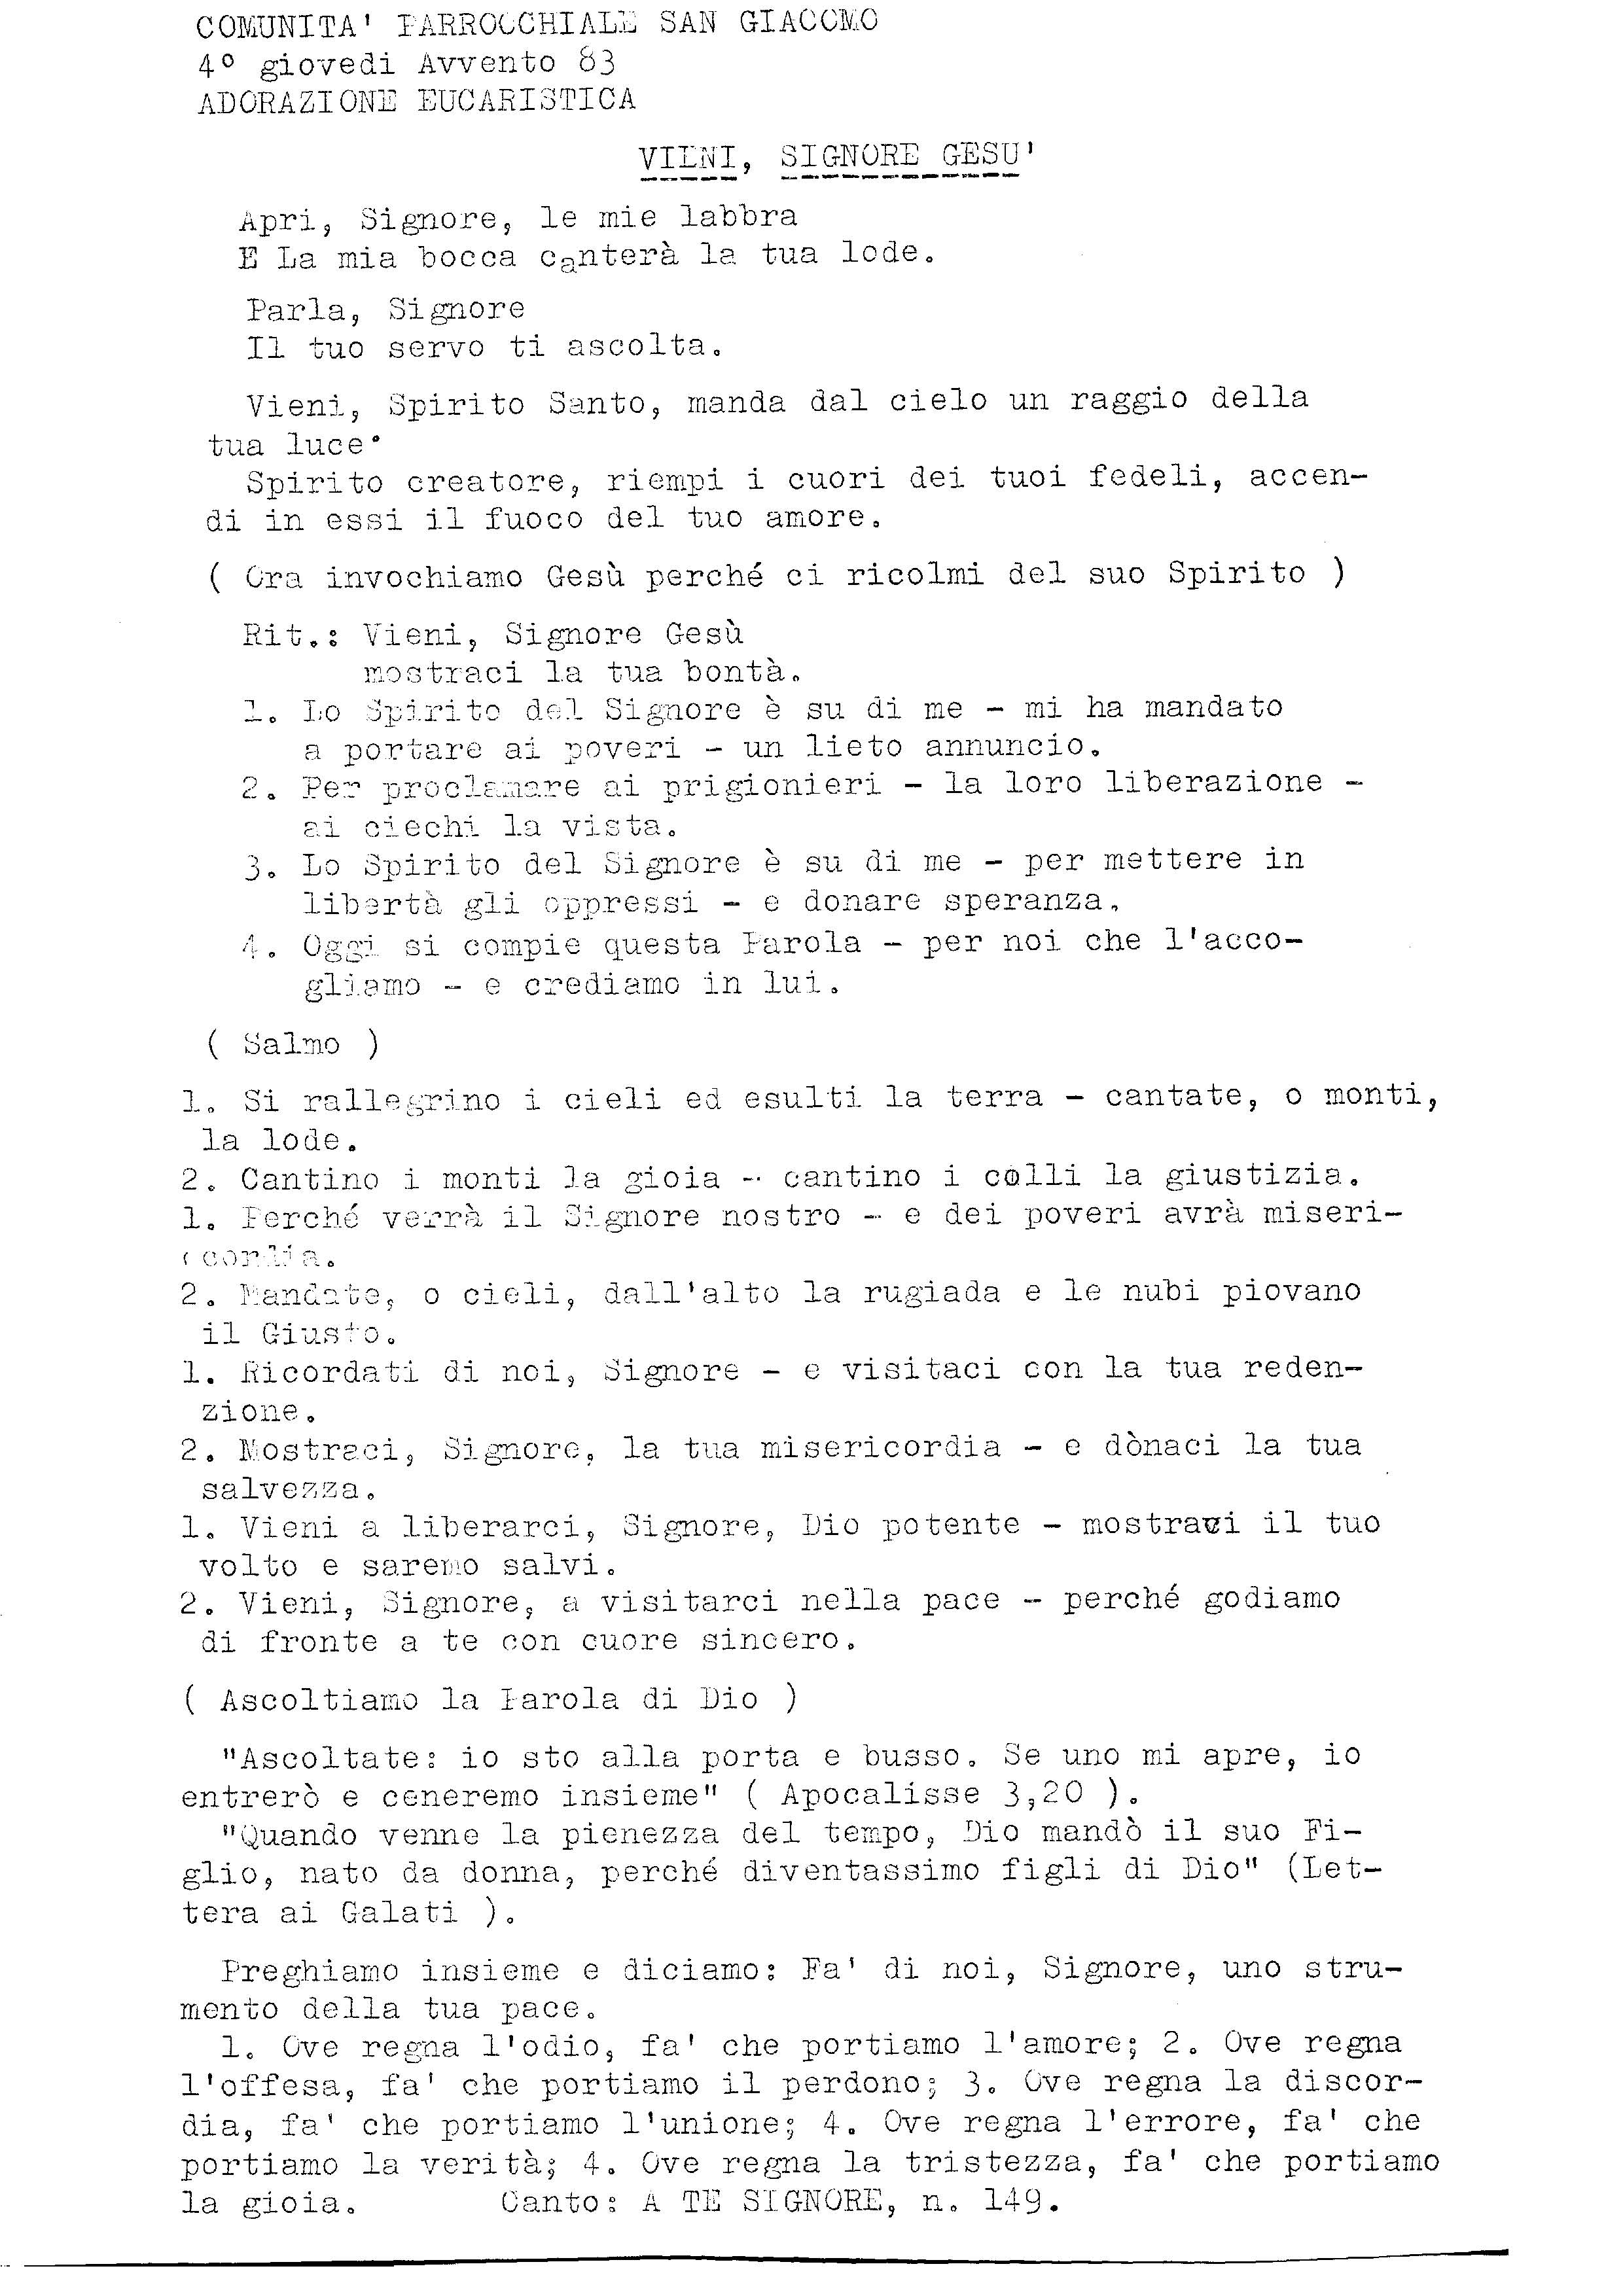 Adorazione_Eucaristica003.pdf